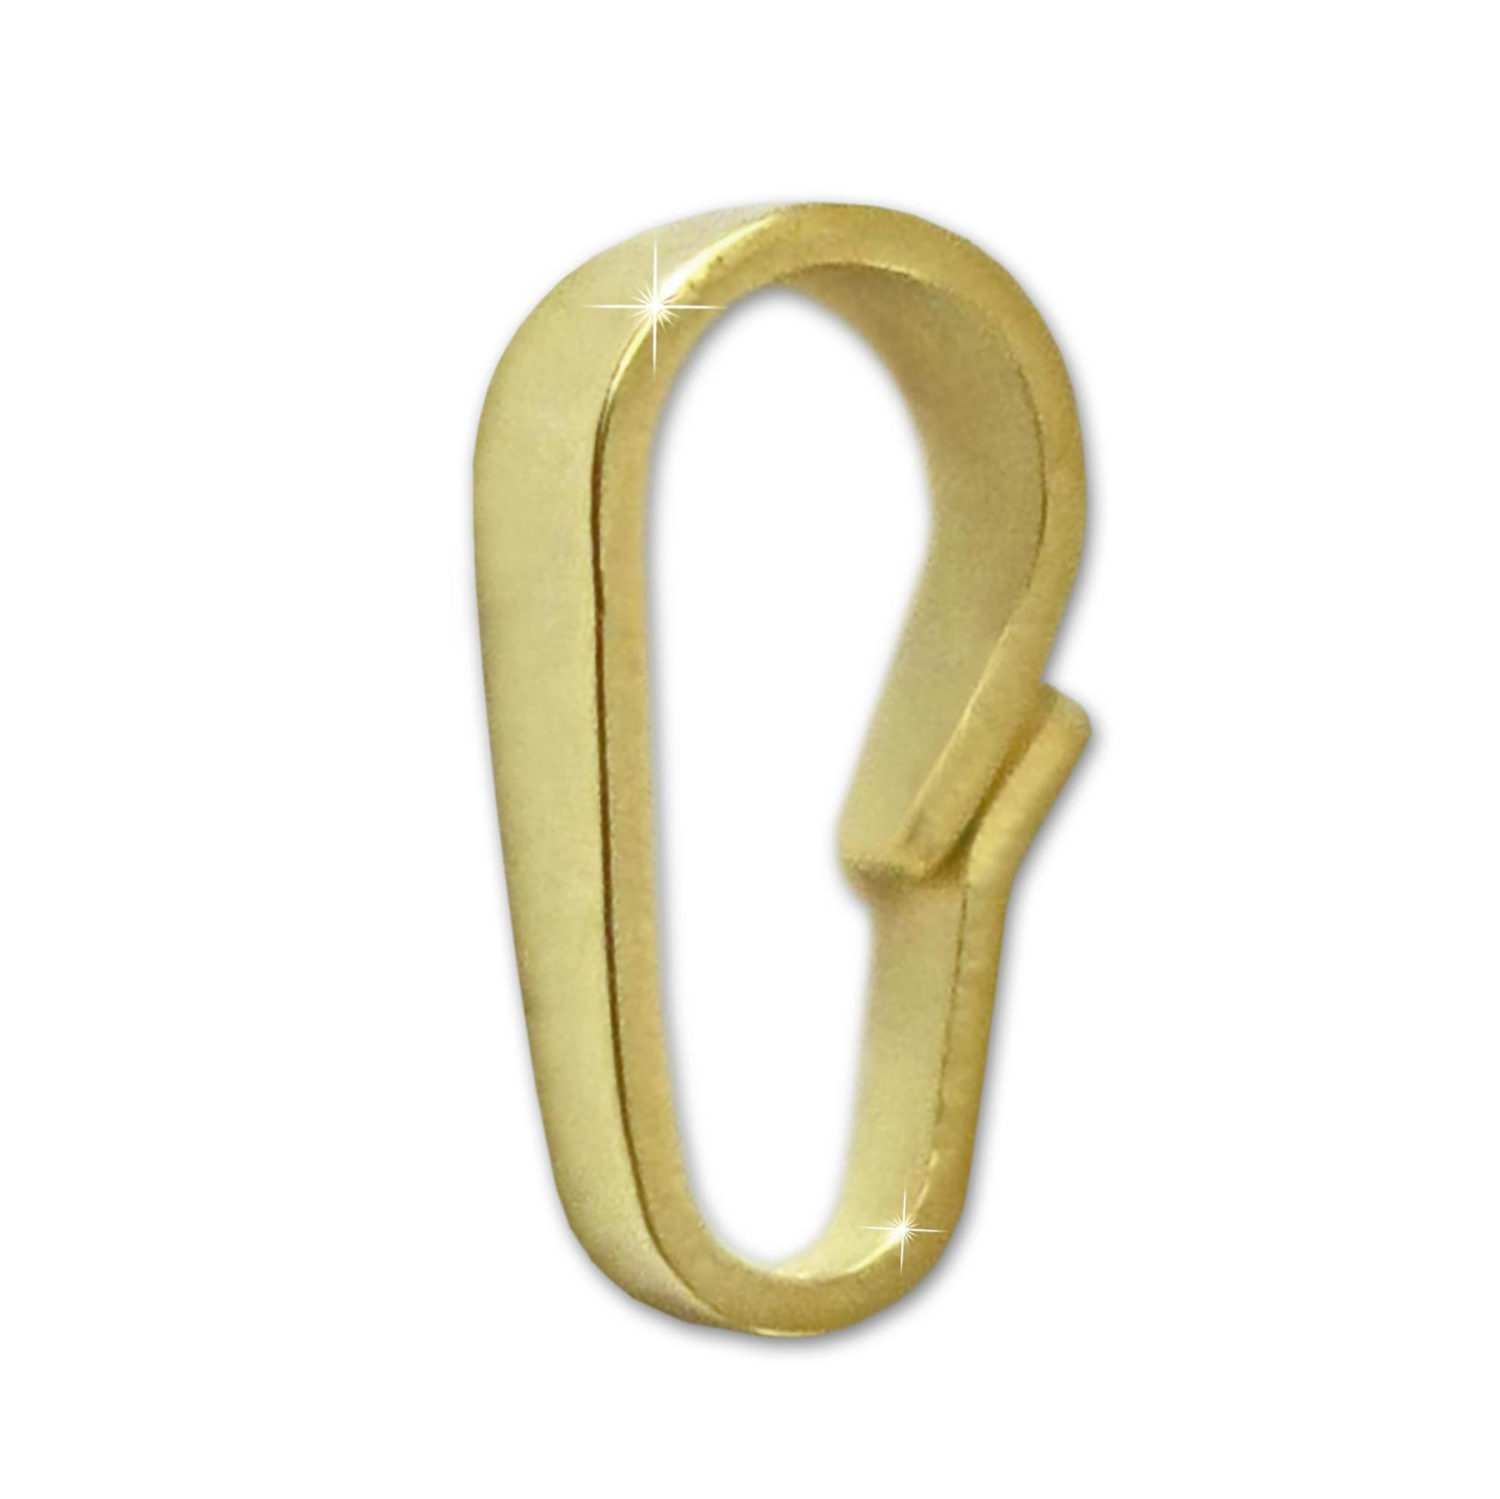 Gold Kettenöse 6mm Kettenschlaufe 333 Gelbgold 8 Karat Ersatz für Goldschmuck Reparatur